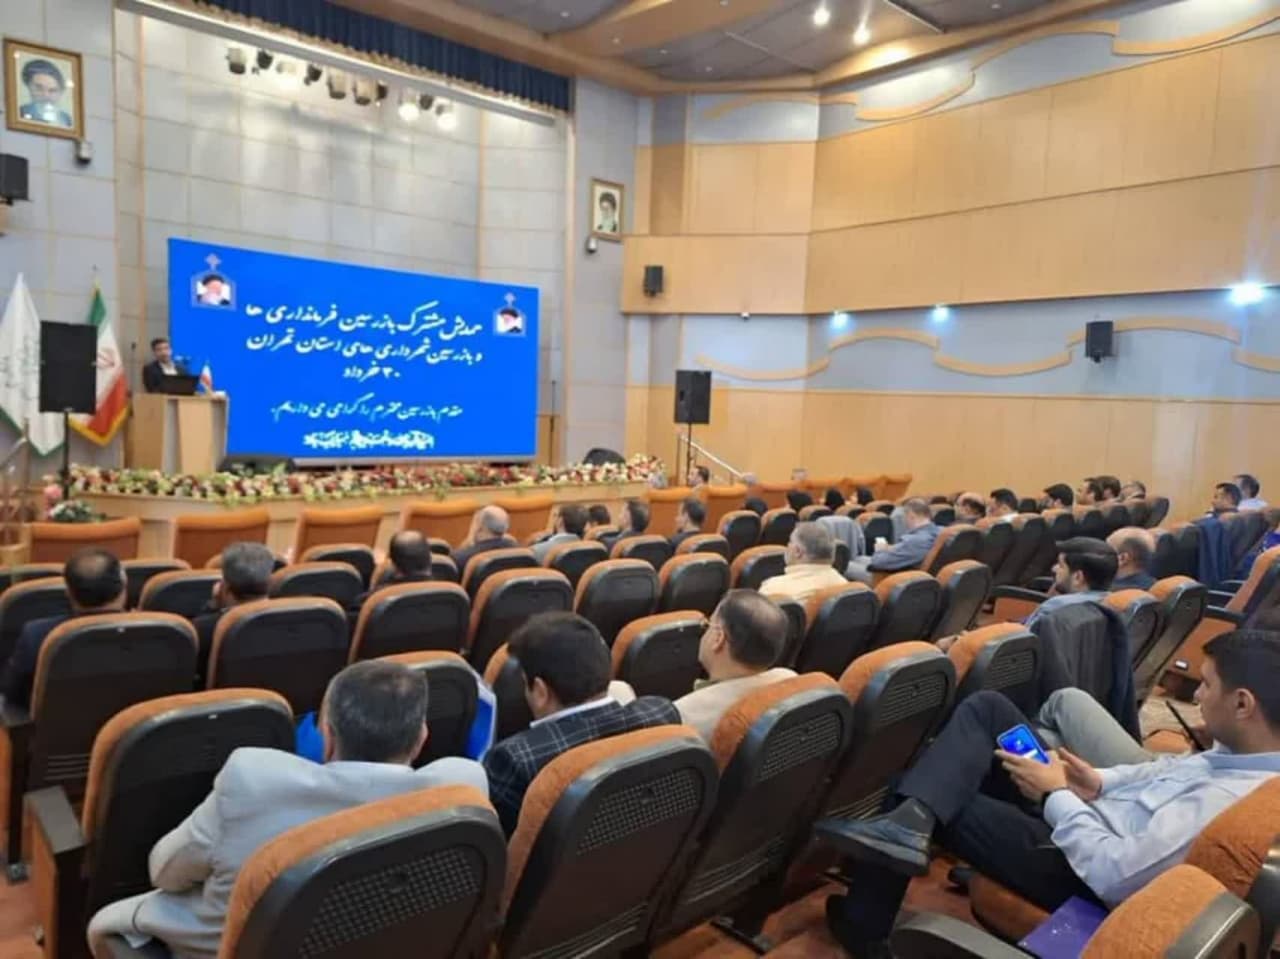 برگزاری همایش مشترک بازرسین فرمانداری ها و شهرداری های استان تهران به میزبانی شهرداری اسلامشهر